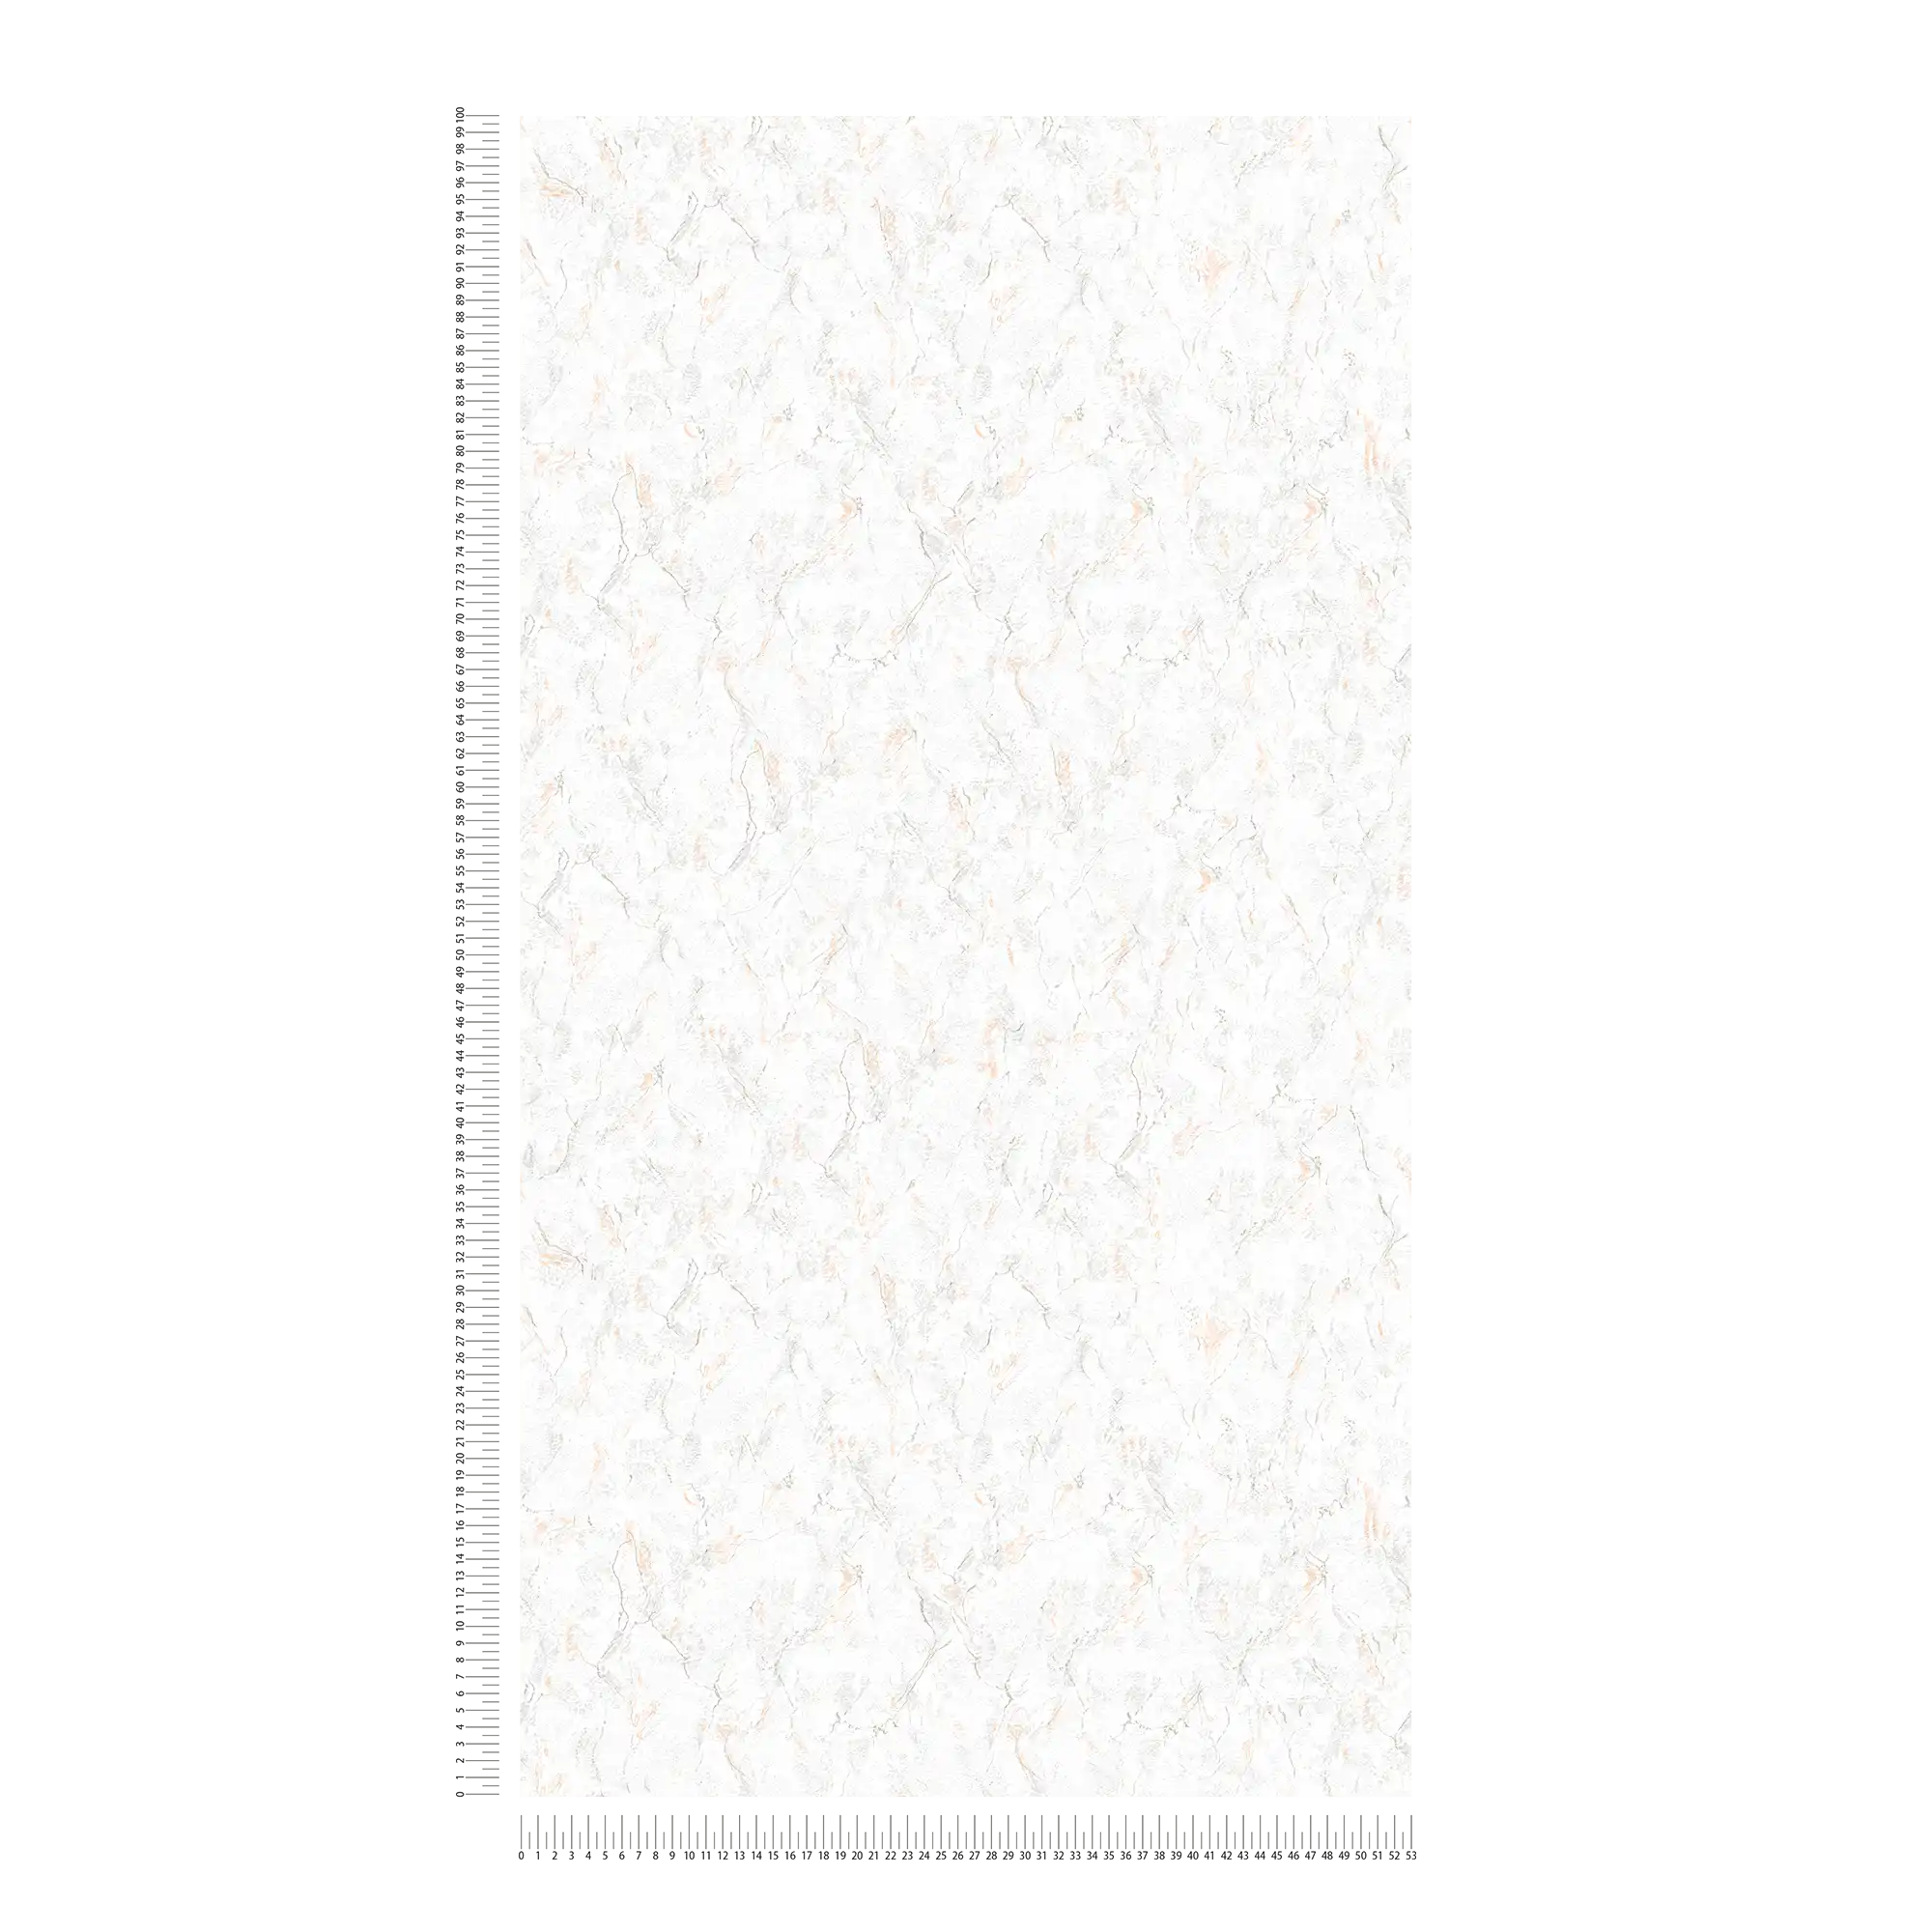             Carta da parati marmorizzata con aspetto di pietra naturale - grigio, bianco
        